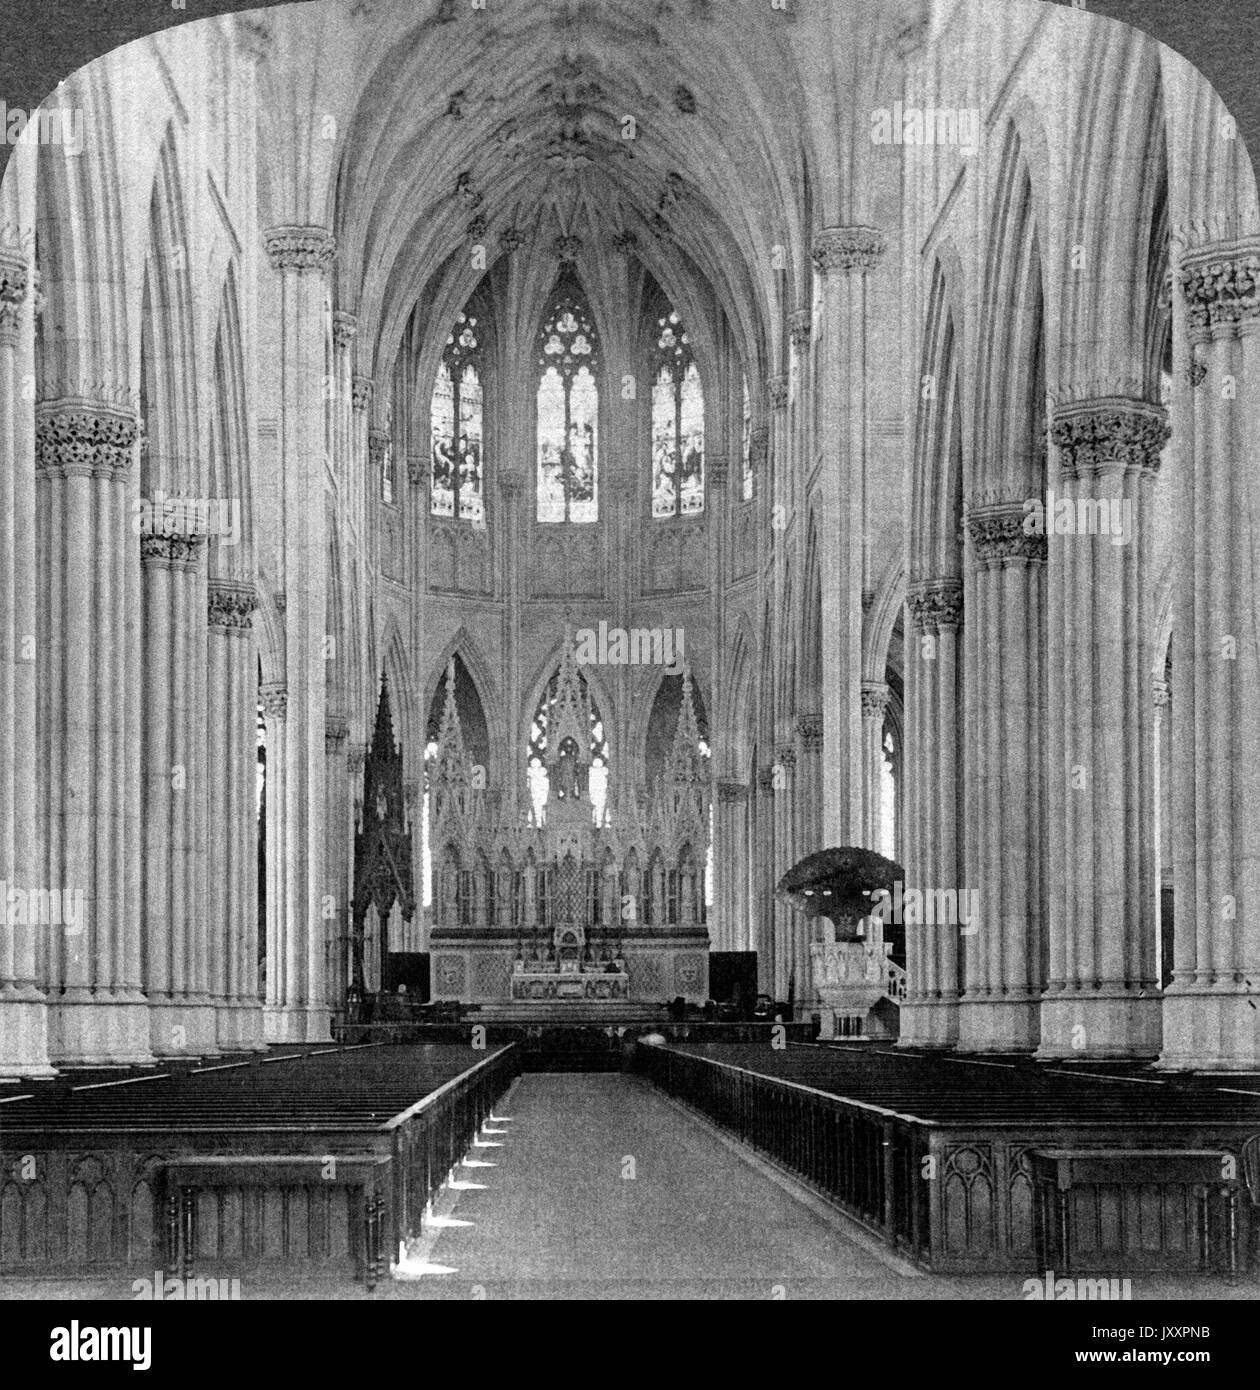 Im Inneren der Kathedrale St Patrick à New York City, New York, USA 1902. Intérieur de la cathédrale Saint-Patrick, New York, USA 1902. Banque D'Images